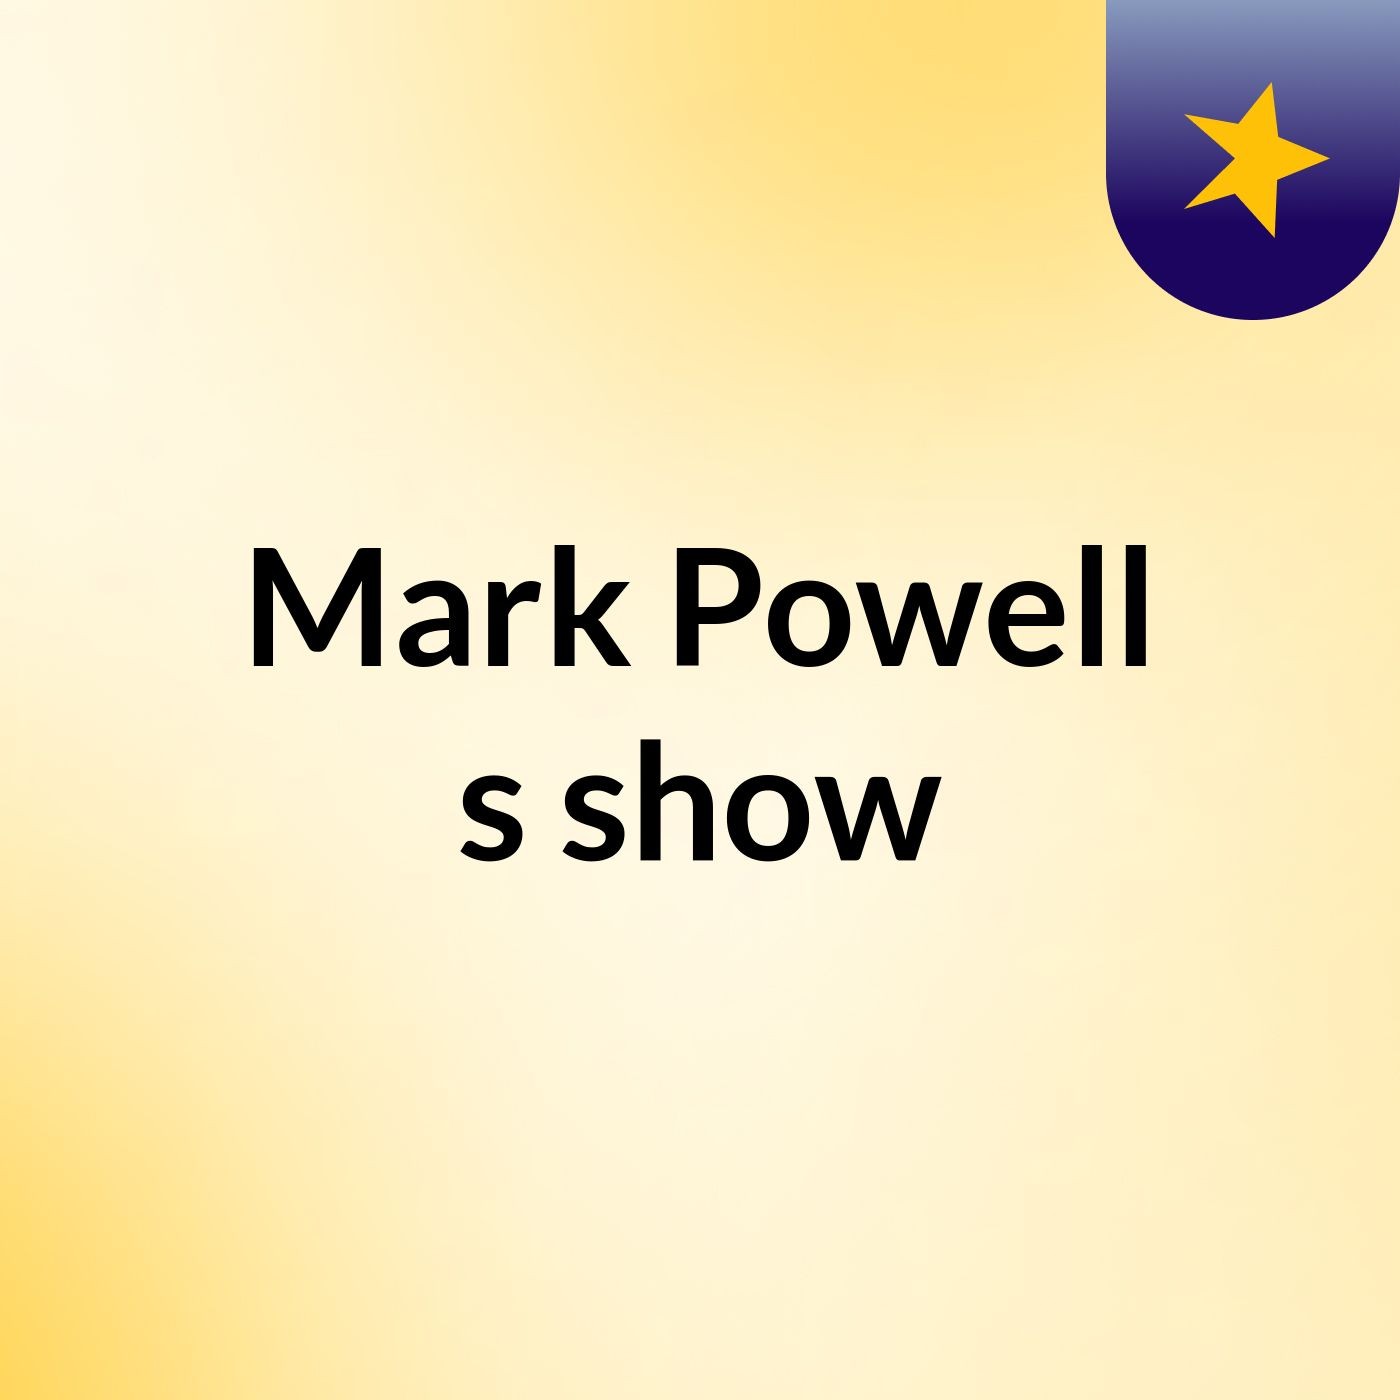 Mark Powell's show